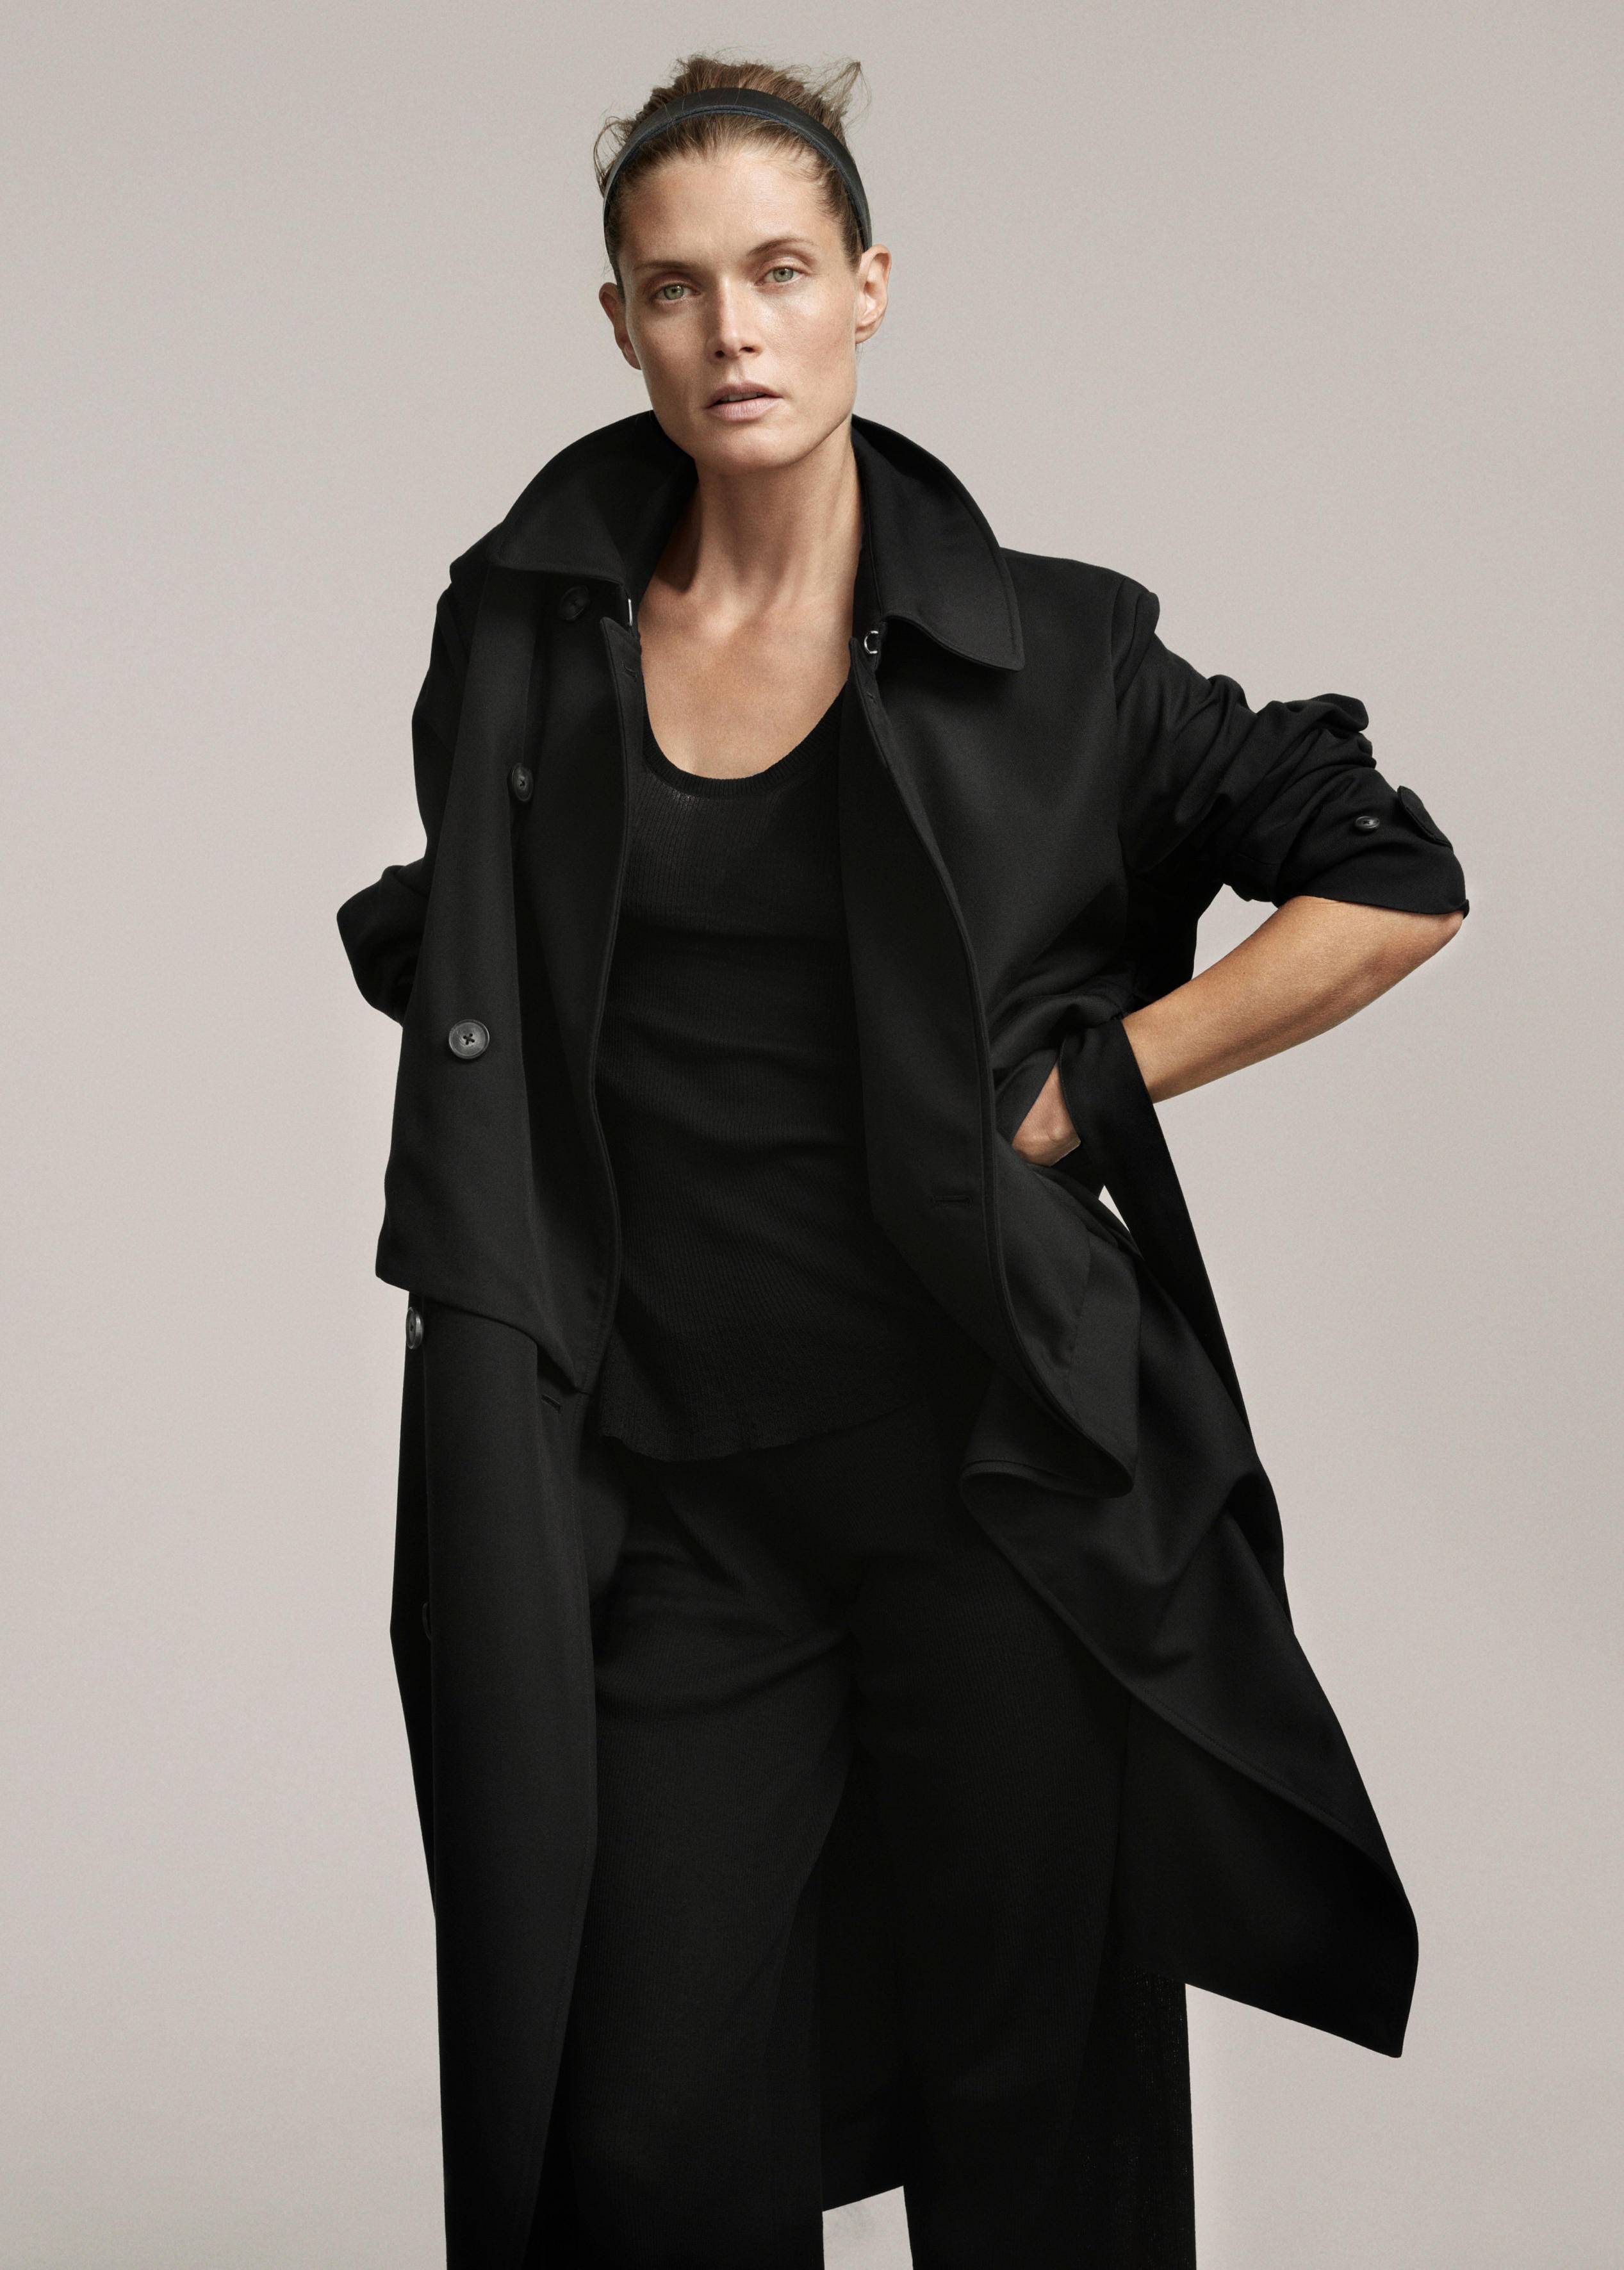 H&M Studio se lance dans le "see now, buy now" lors de la prochaine fashion week 